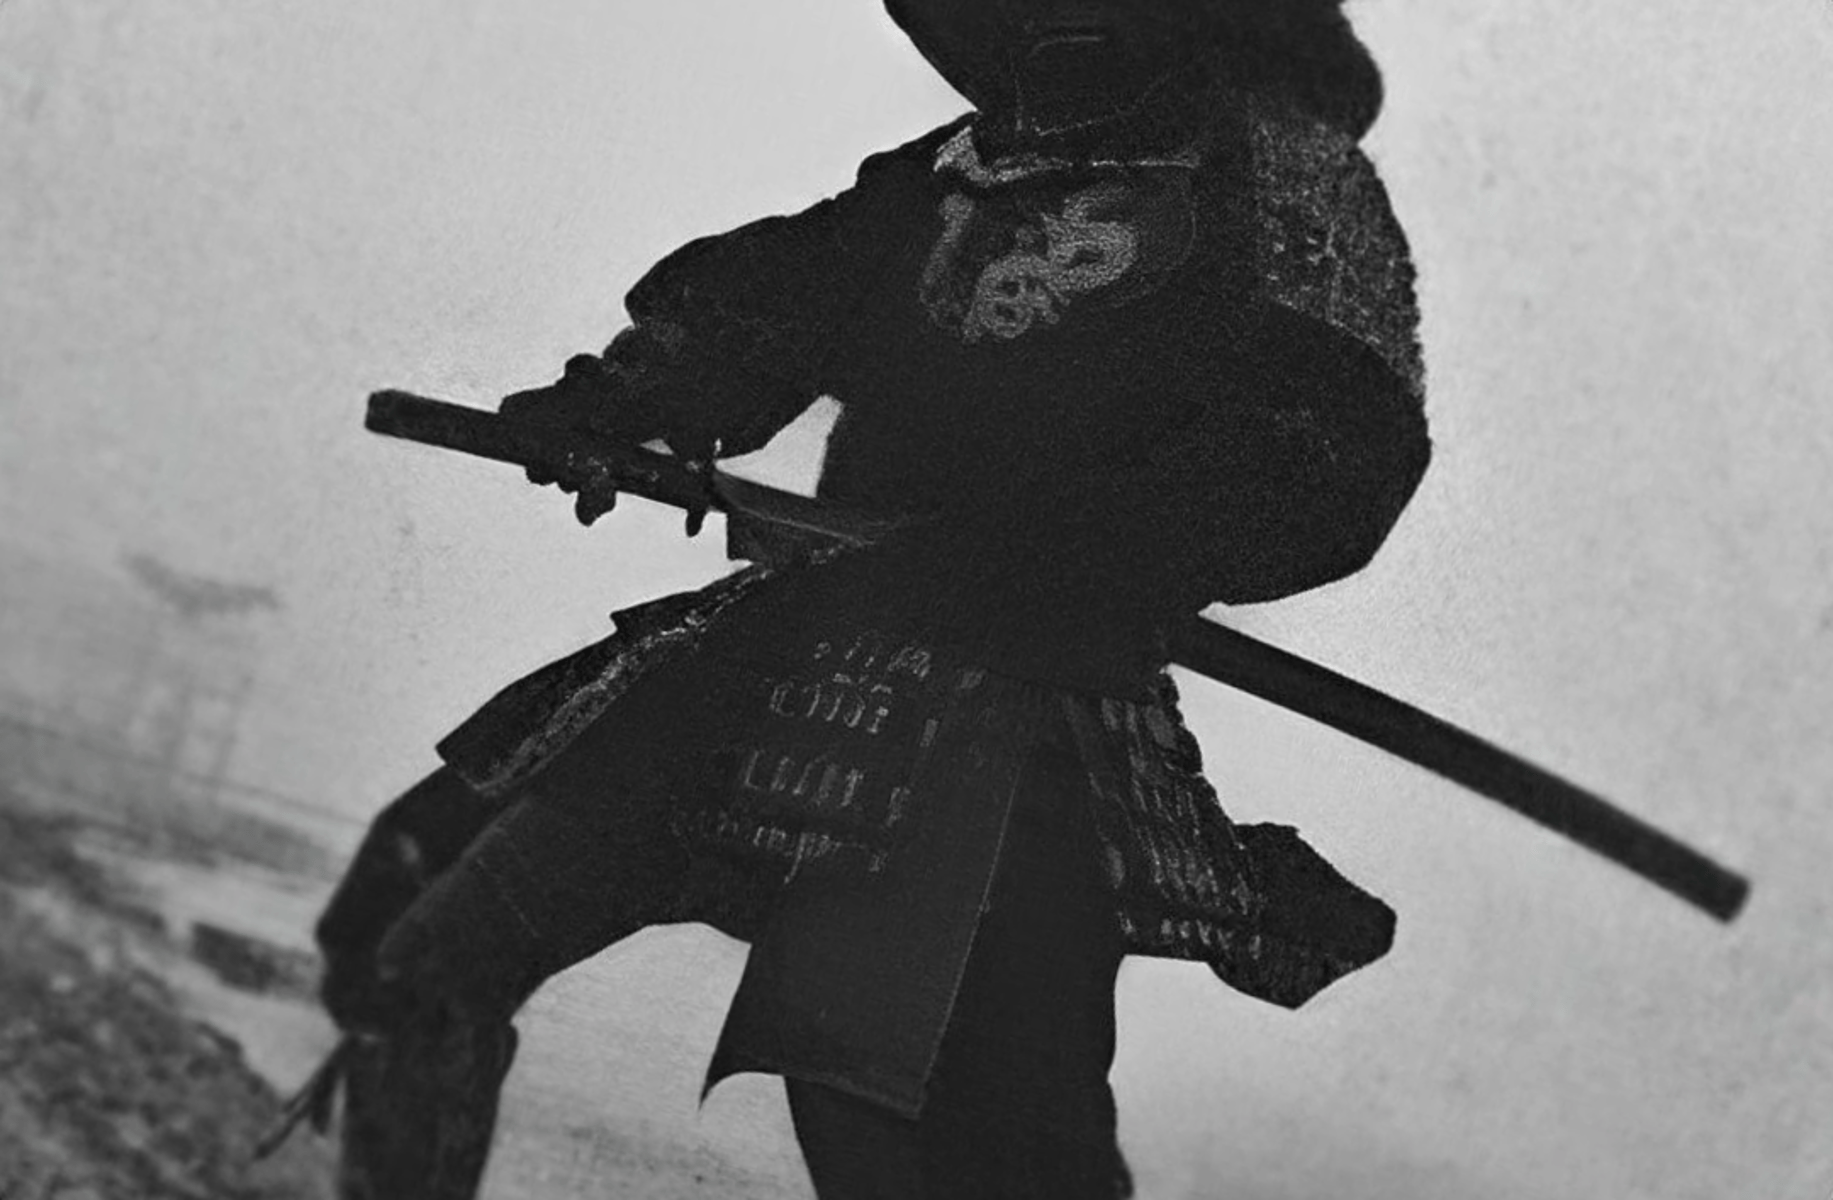 The great sumurai